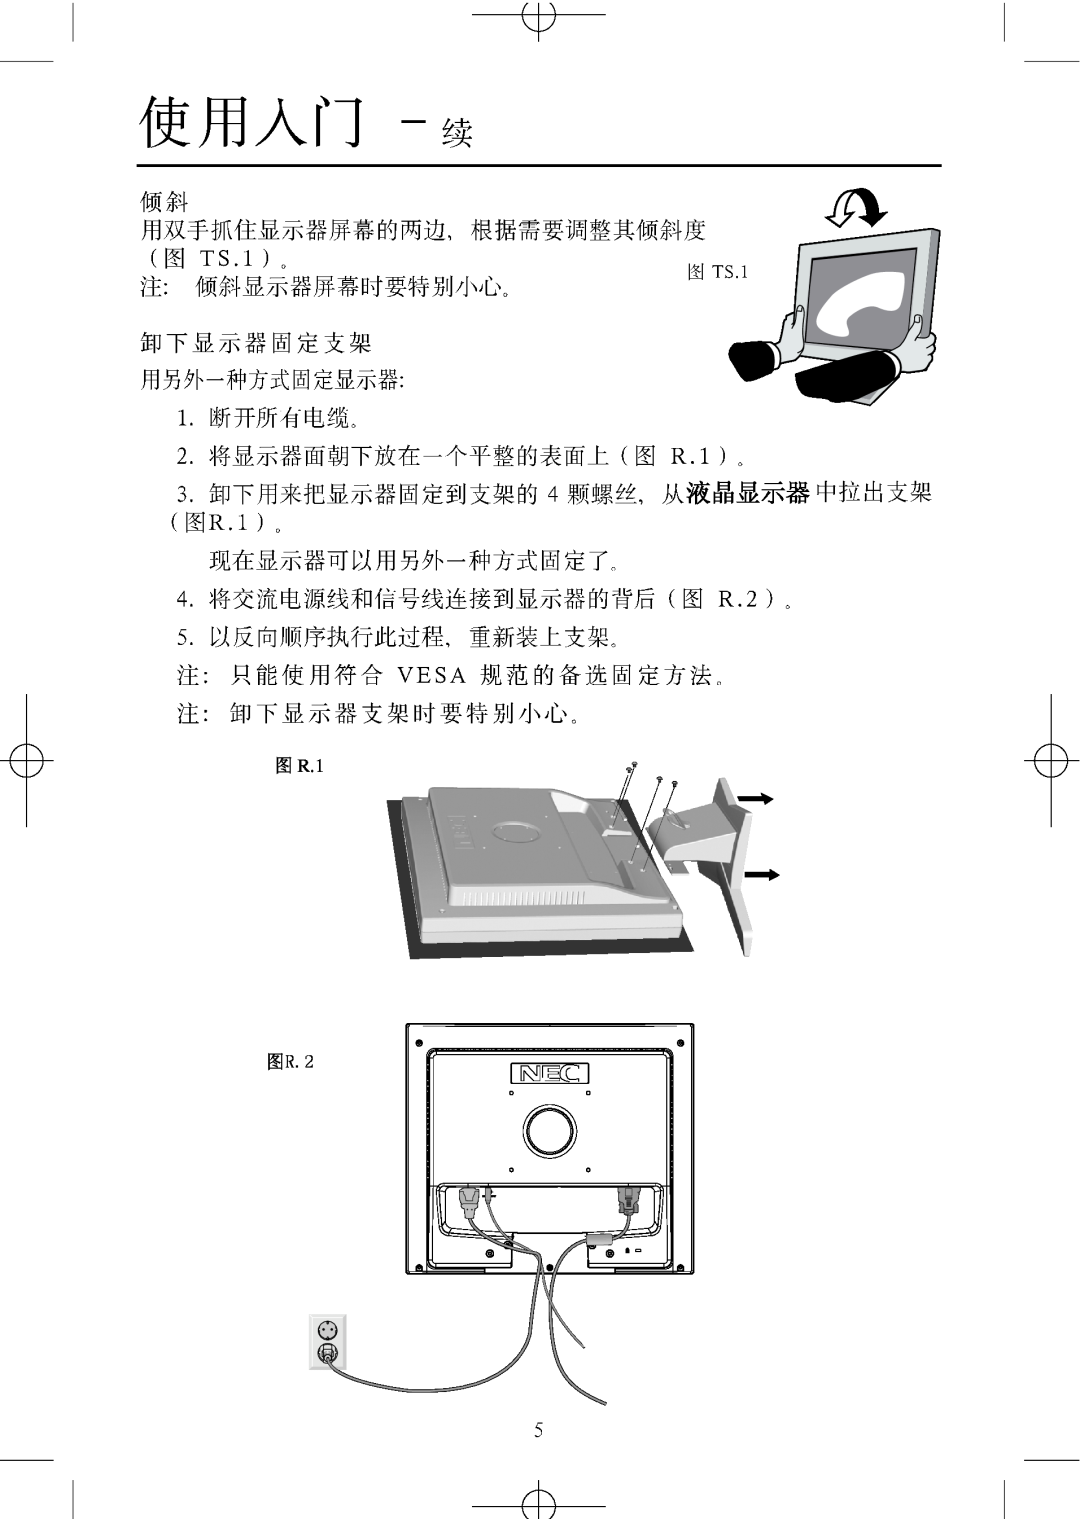 NEC LCD1704M, LCD1904M, LCD1504M manual 图 R.1, 图R.2 